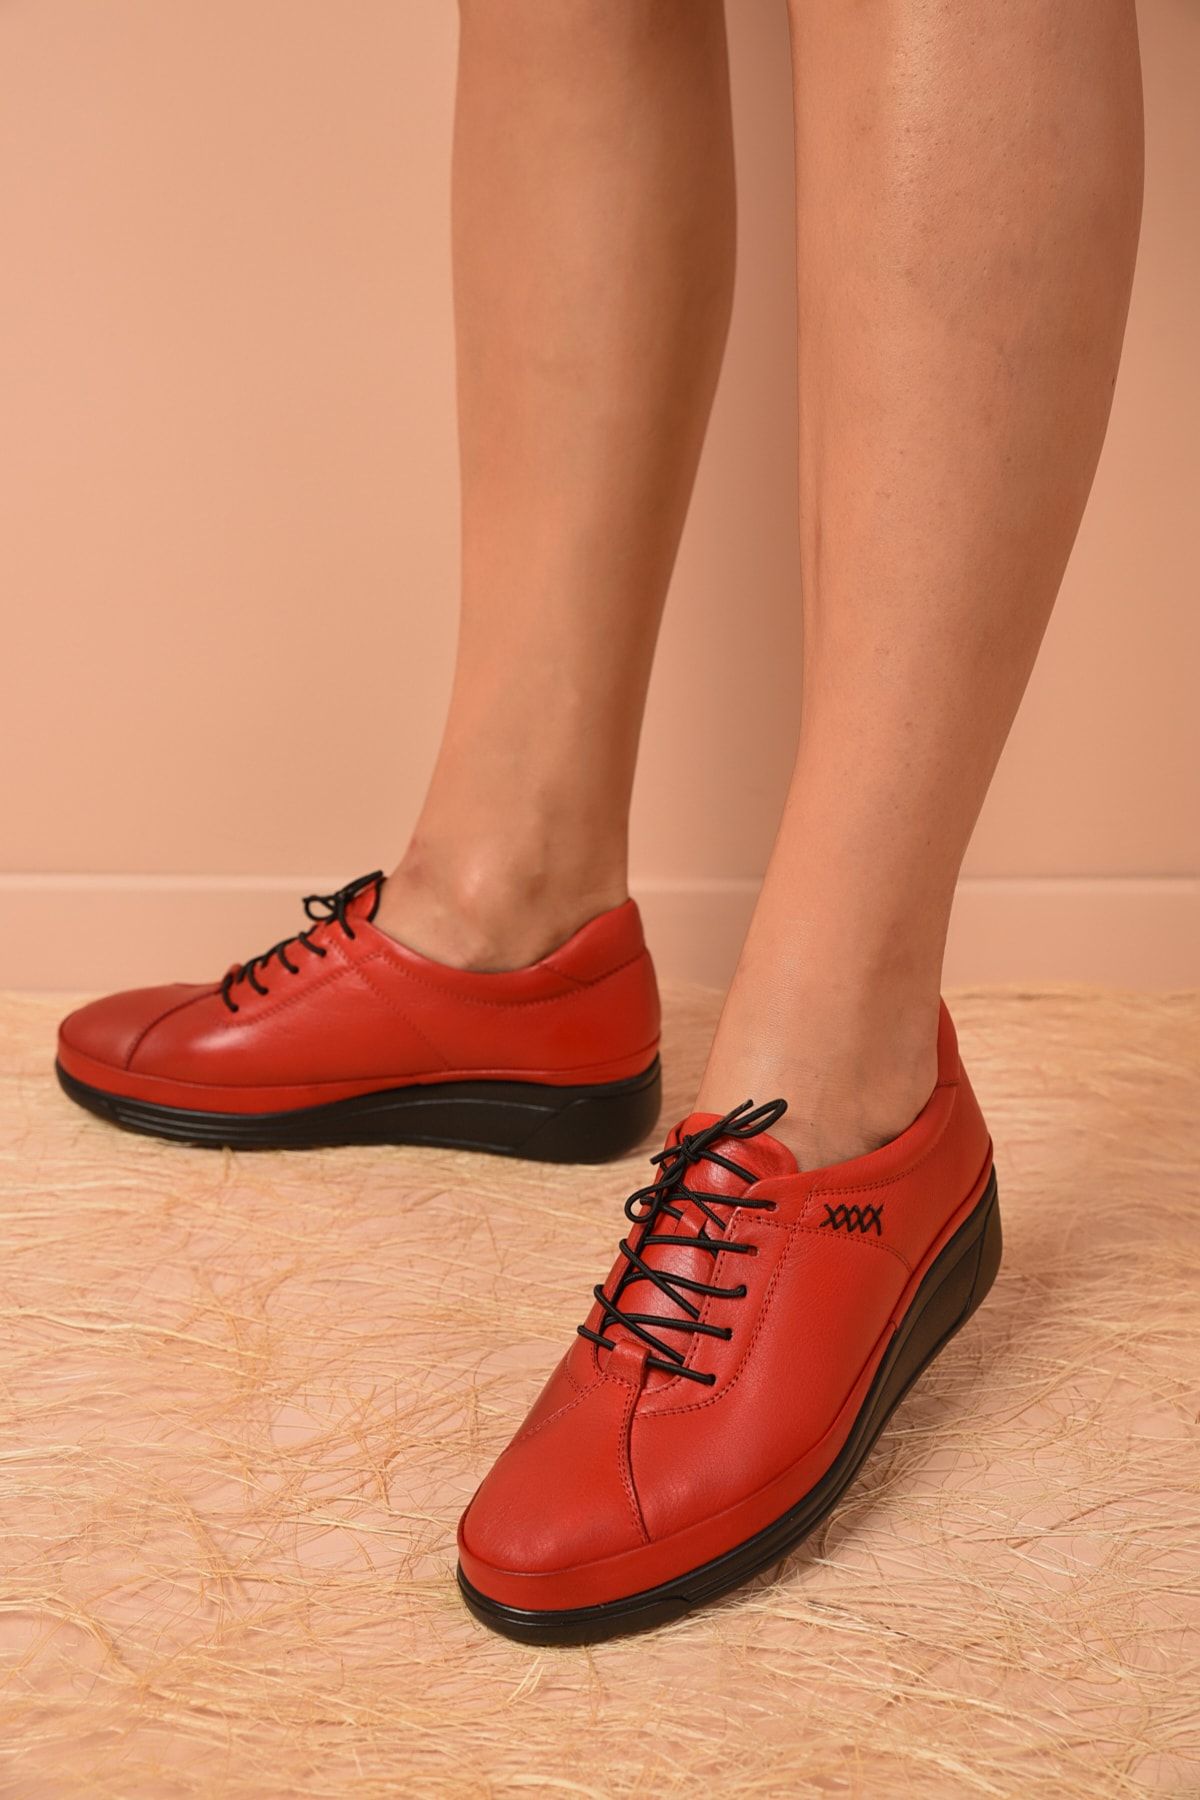 Shoes Time Kadın Kırmızı Deri Günlük Ayakkabı 20k 176